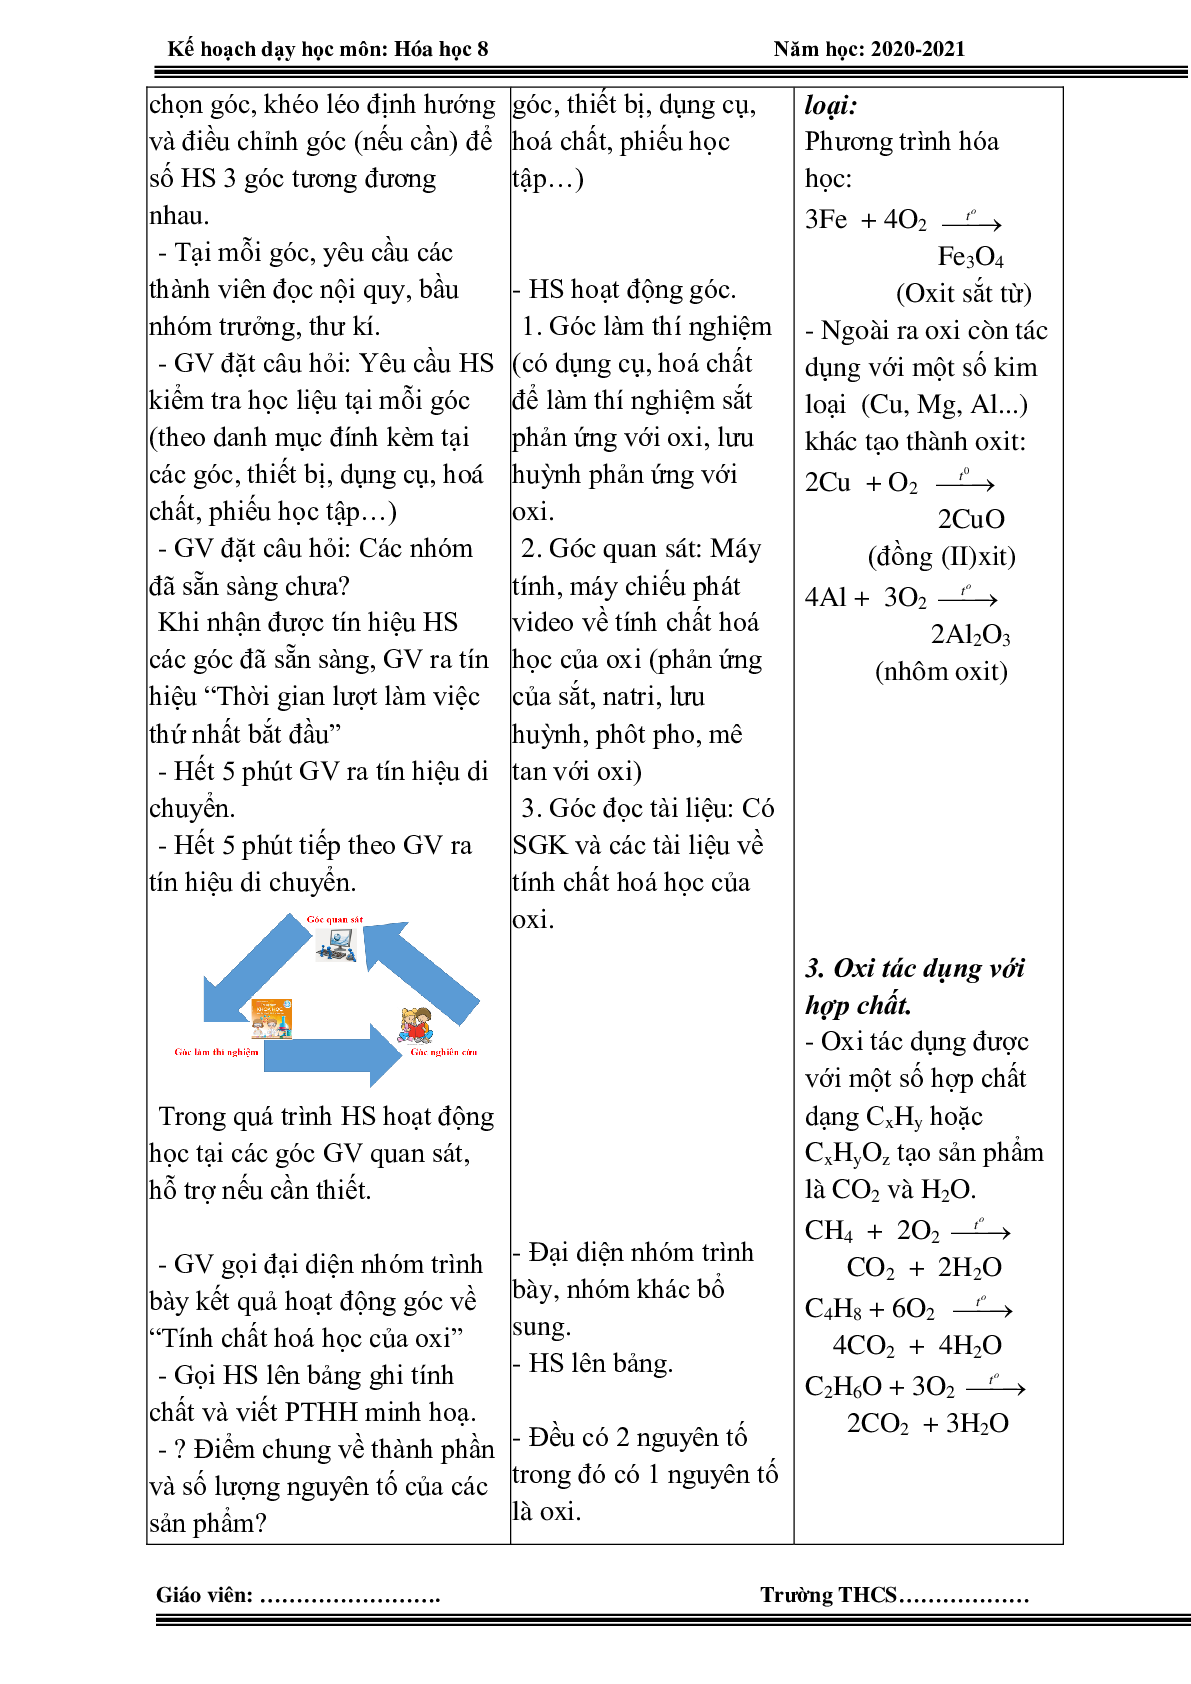 Giáo án hóa học 8 HK 2 theo công văn 5512 mới nhất (trang 5)